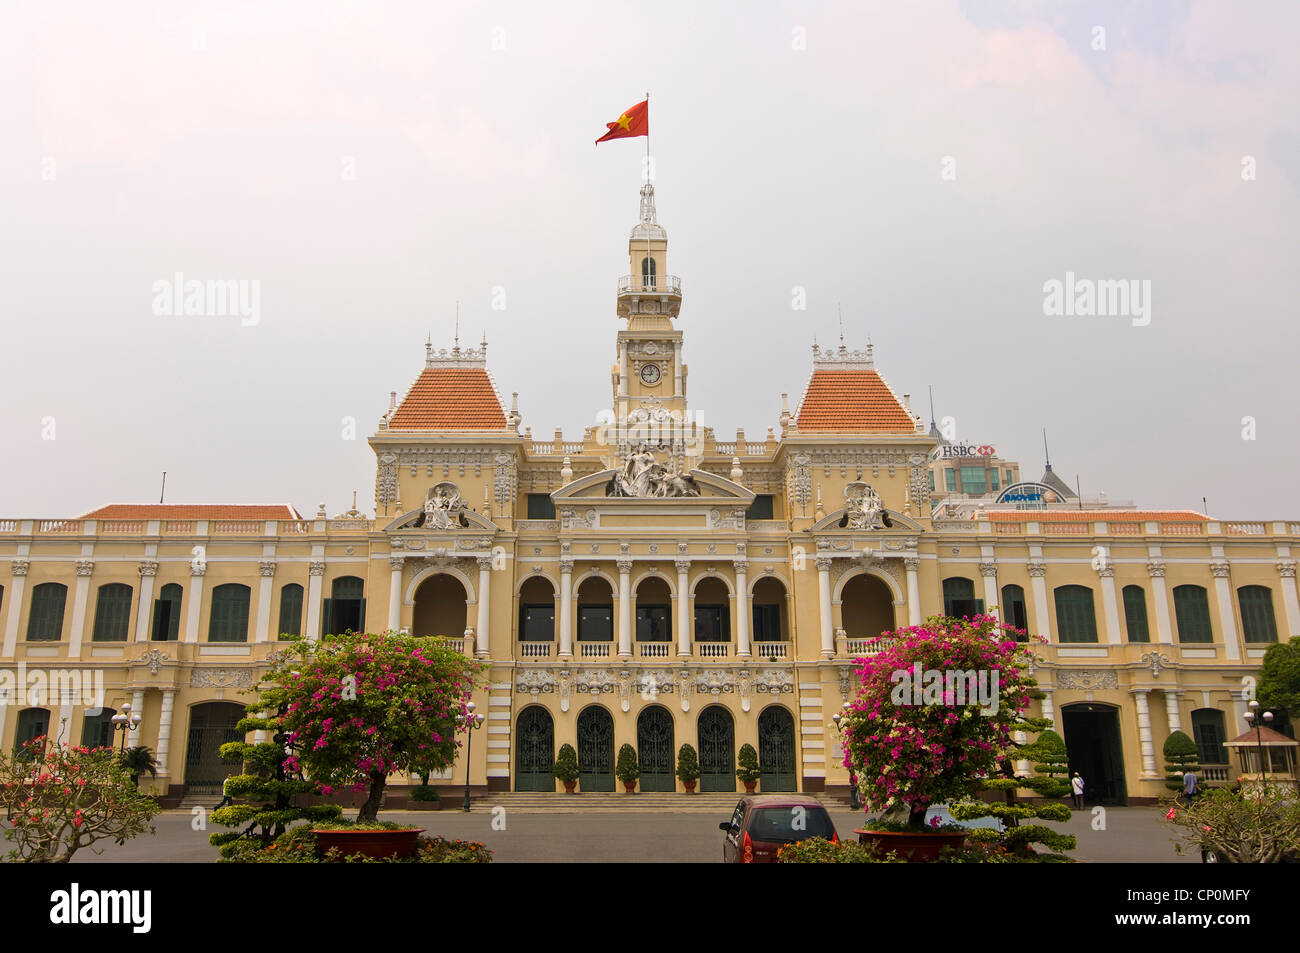 Horizontal wide angle of City Hall or Hôtel de Ville de Saigon, Trụ sở Ủy ban Nhân dân Thành phố Hồ Chí Minh in Ho Chi Minh City Stock Photo